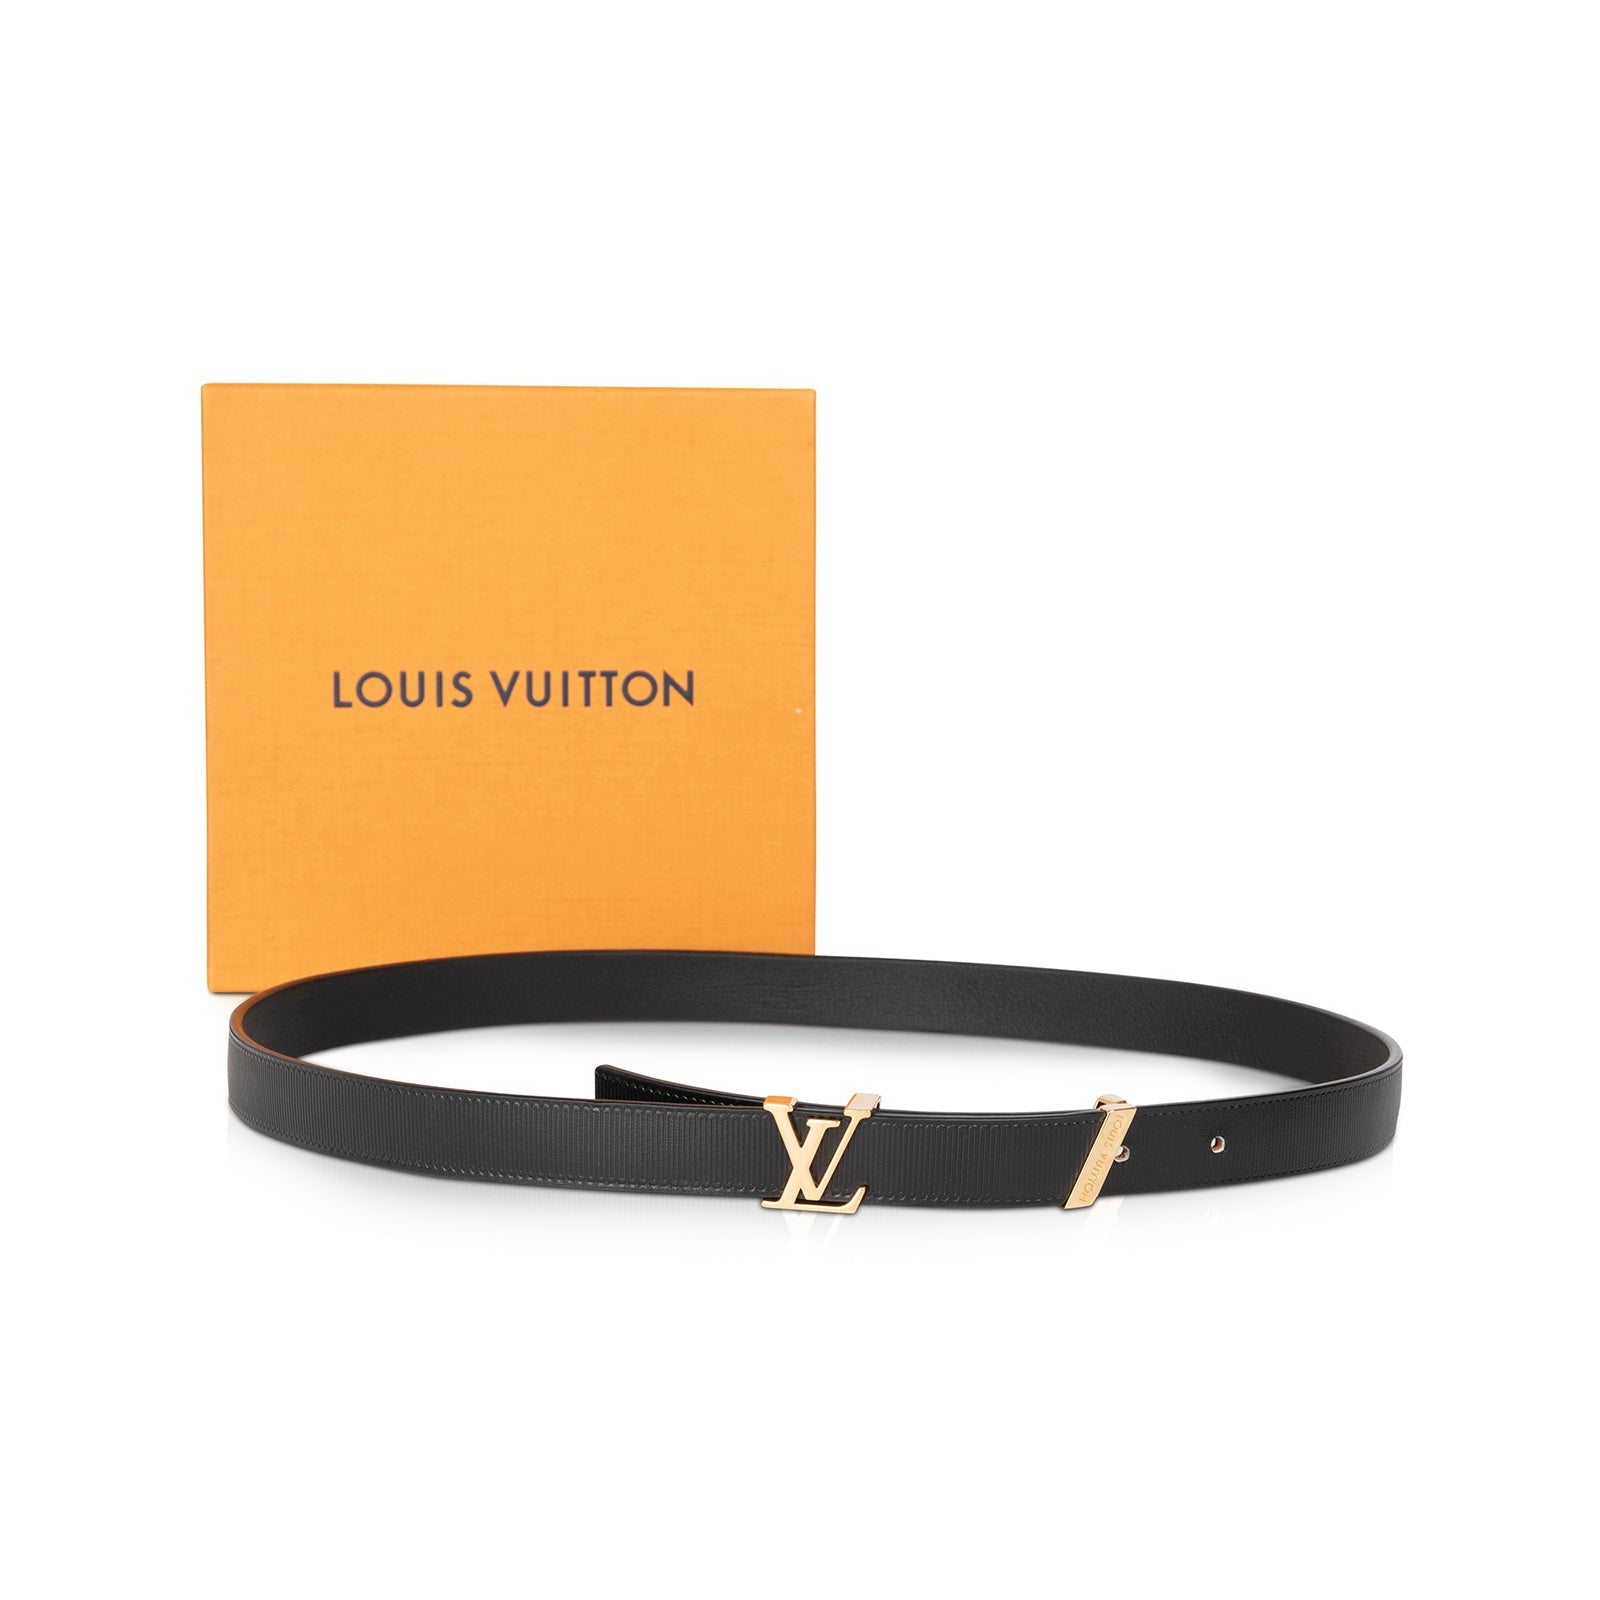 Louis Vuitton LV Initiales 20mm Black Calf. Size 75 cm